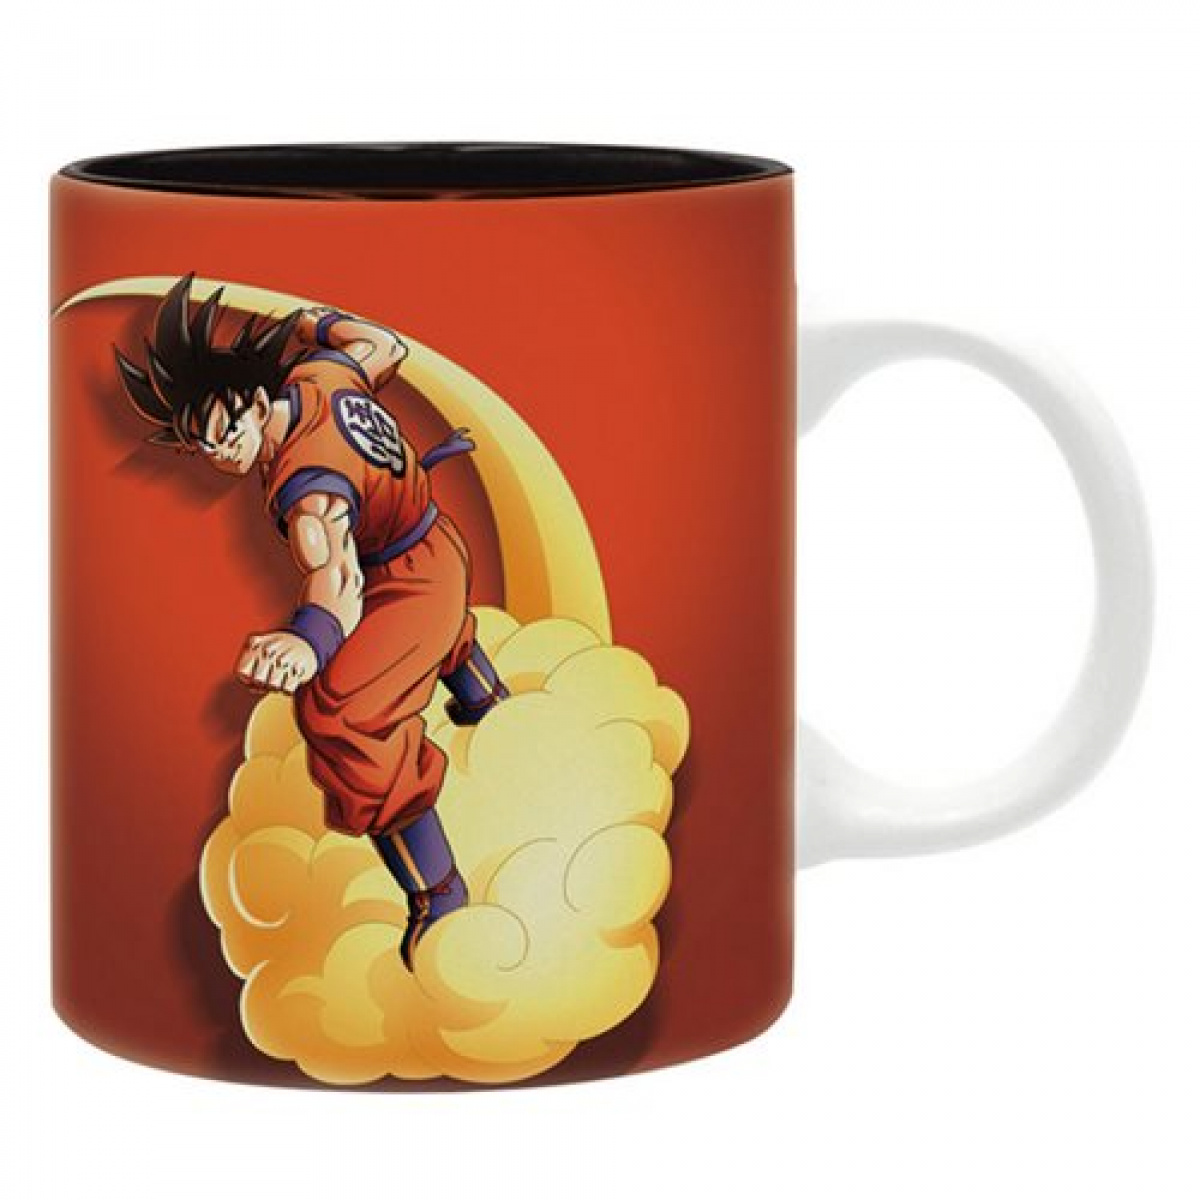 Dragon Ball Z Kakarot: Goku Flying on Nimbus Cloud Mug